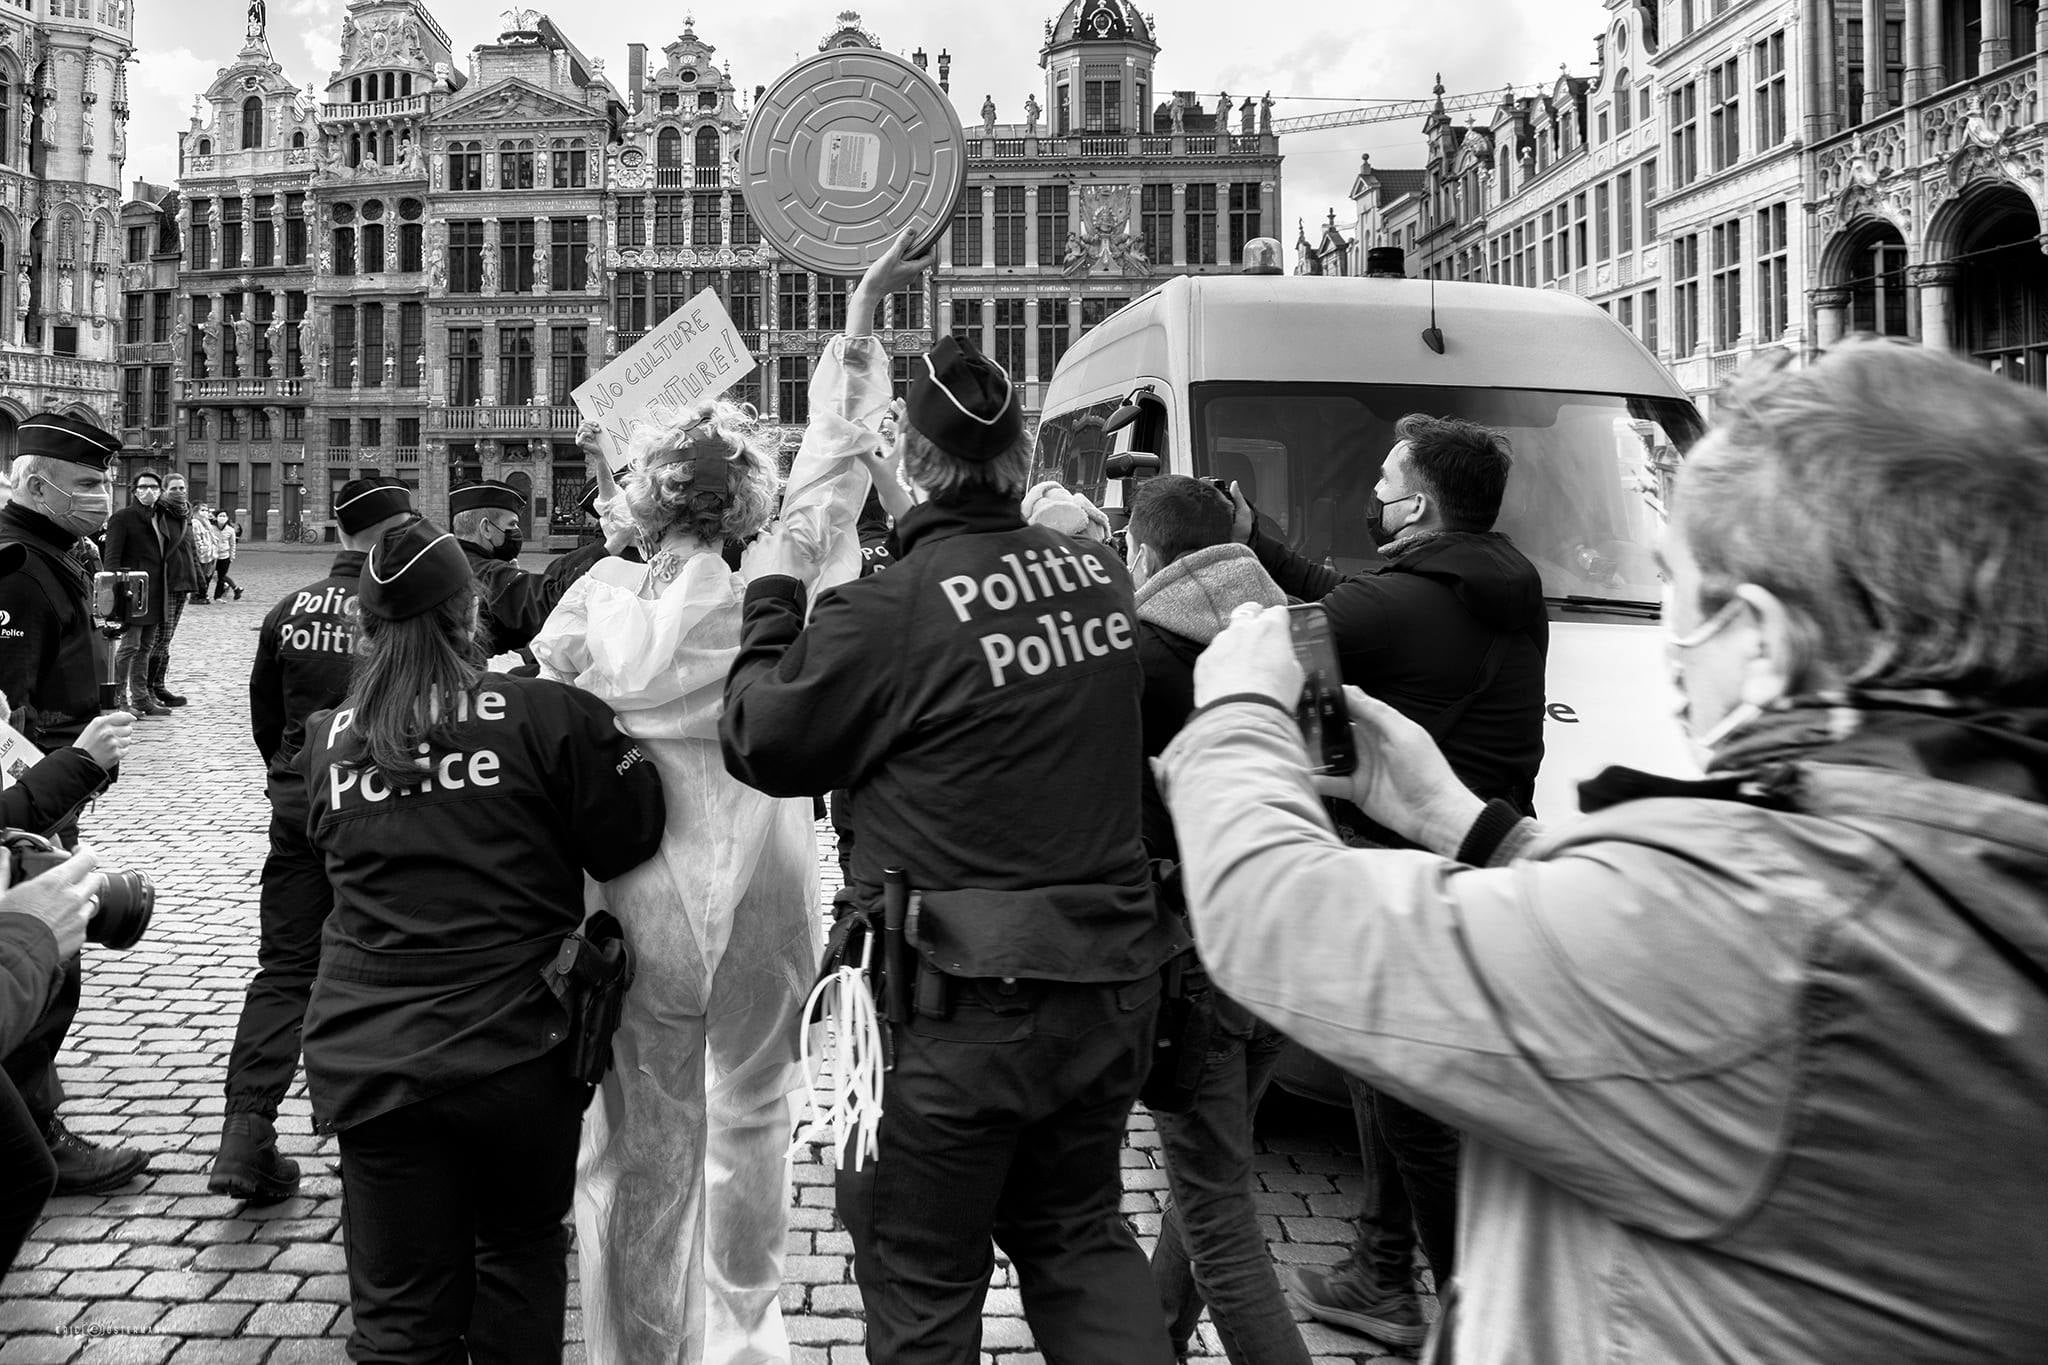 arrestation police artistes Still standing for culture (14 mars à la grand-place de Bruxelles)